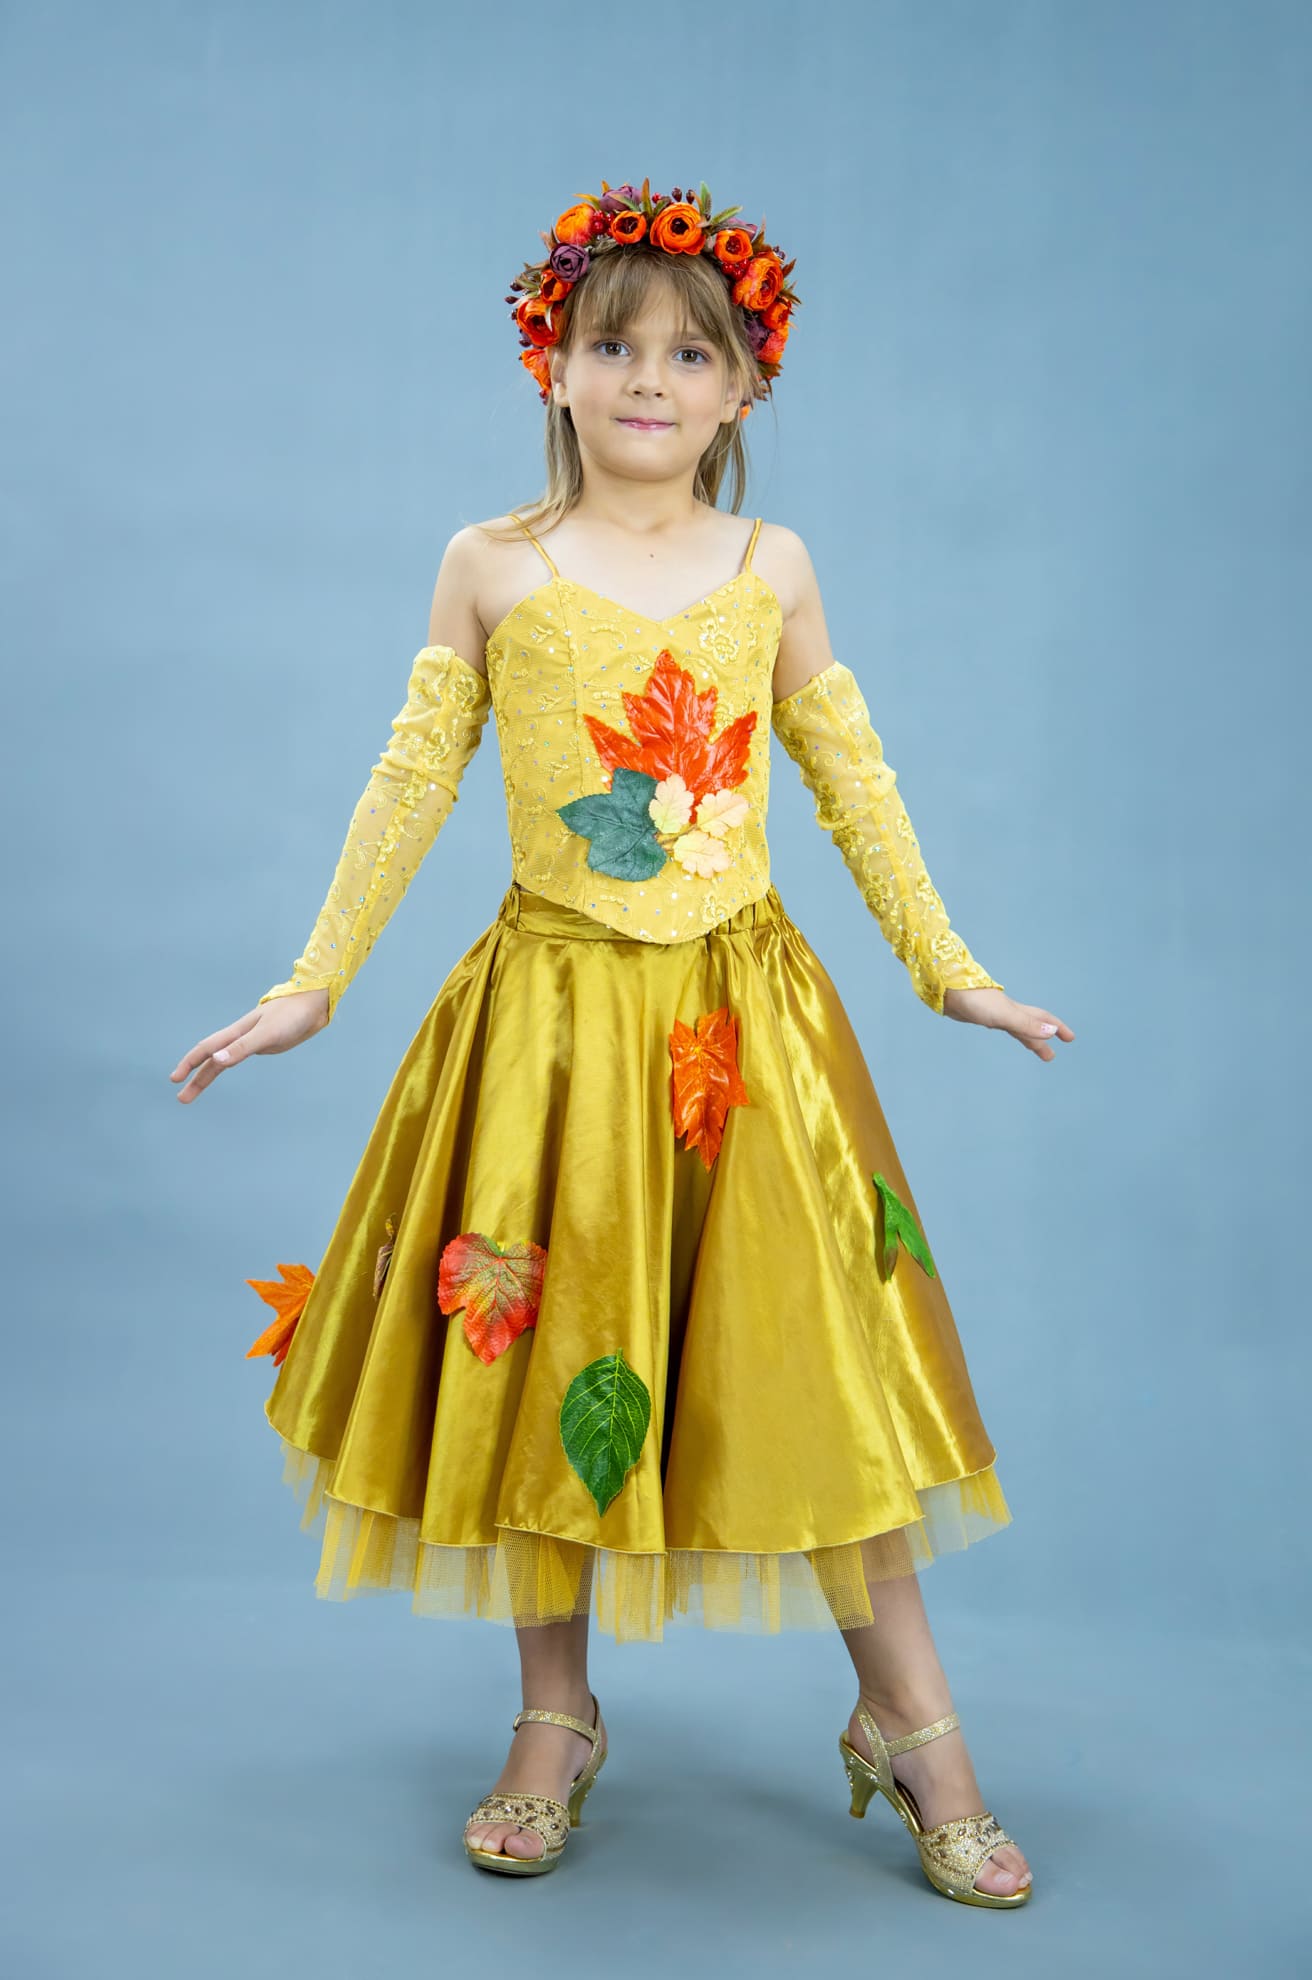 Костюм осени в народном стиле: платье, кокошник (Украина) купить в Москве